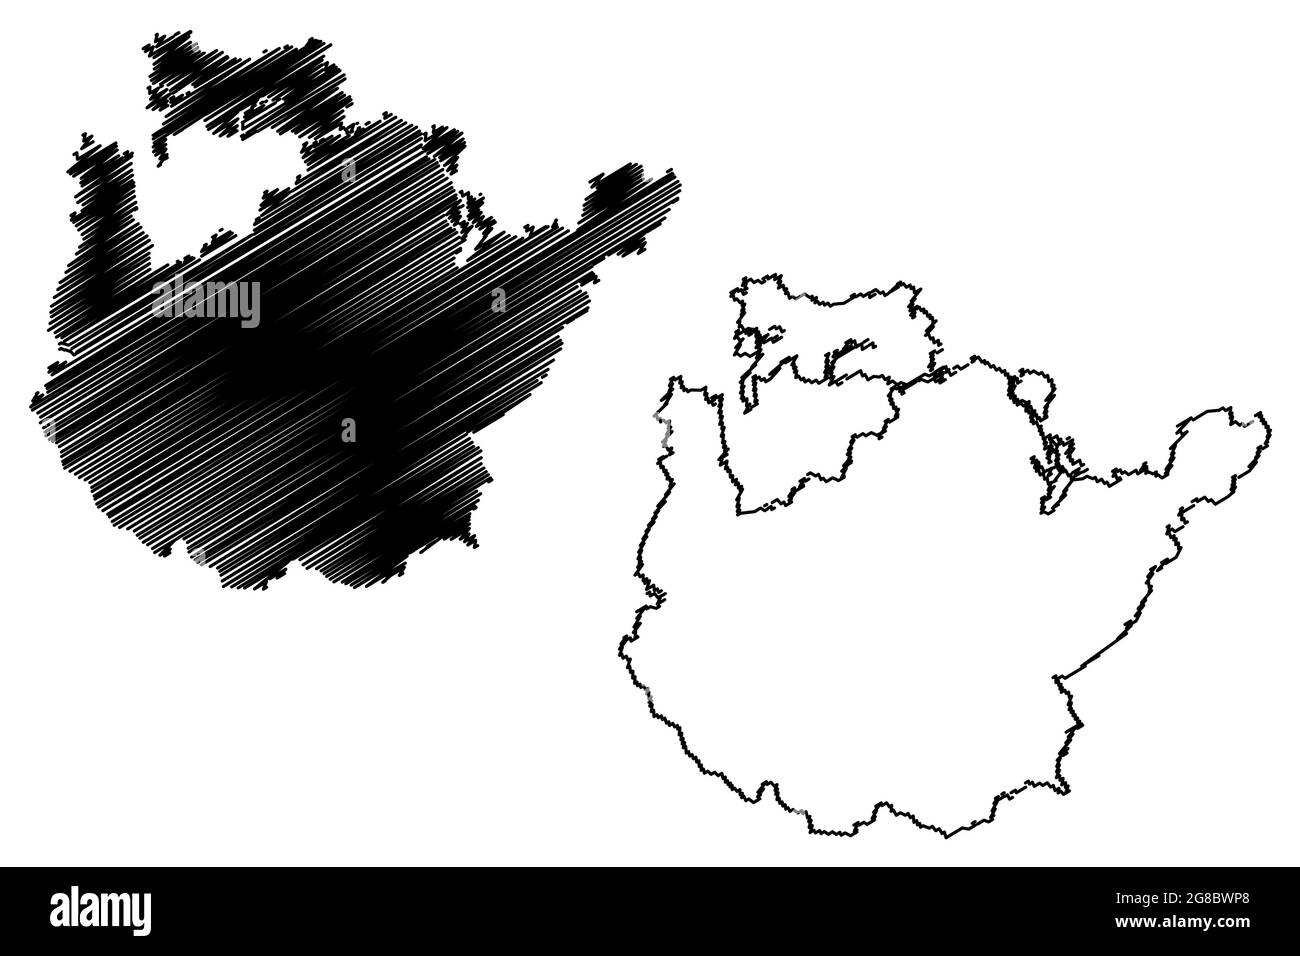 Landkreis Potsdam-Mittelmark (Bundesrepublik Deutschland, Landkreis, Land Brandenburg) Kartenvektordarstellung, Scribble-Skizze Potsdam Mitte Stock Vektor